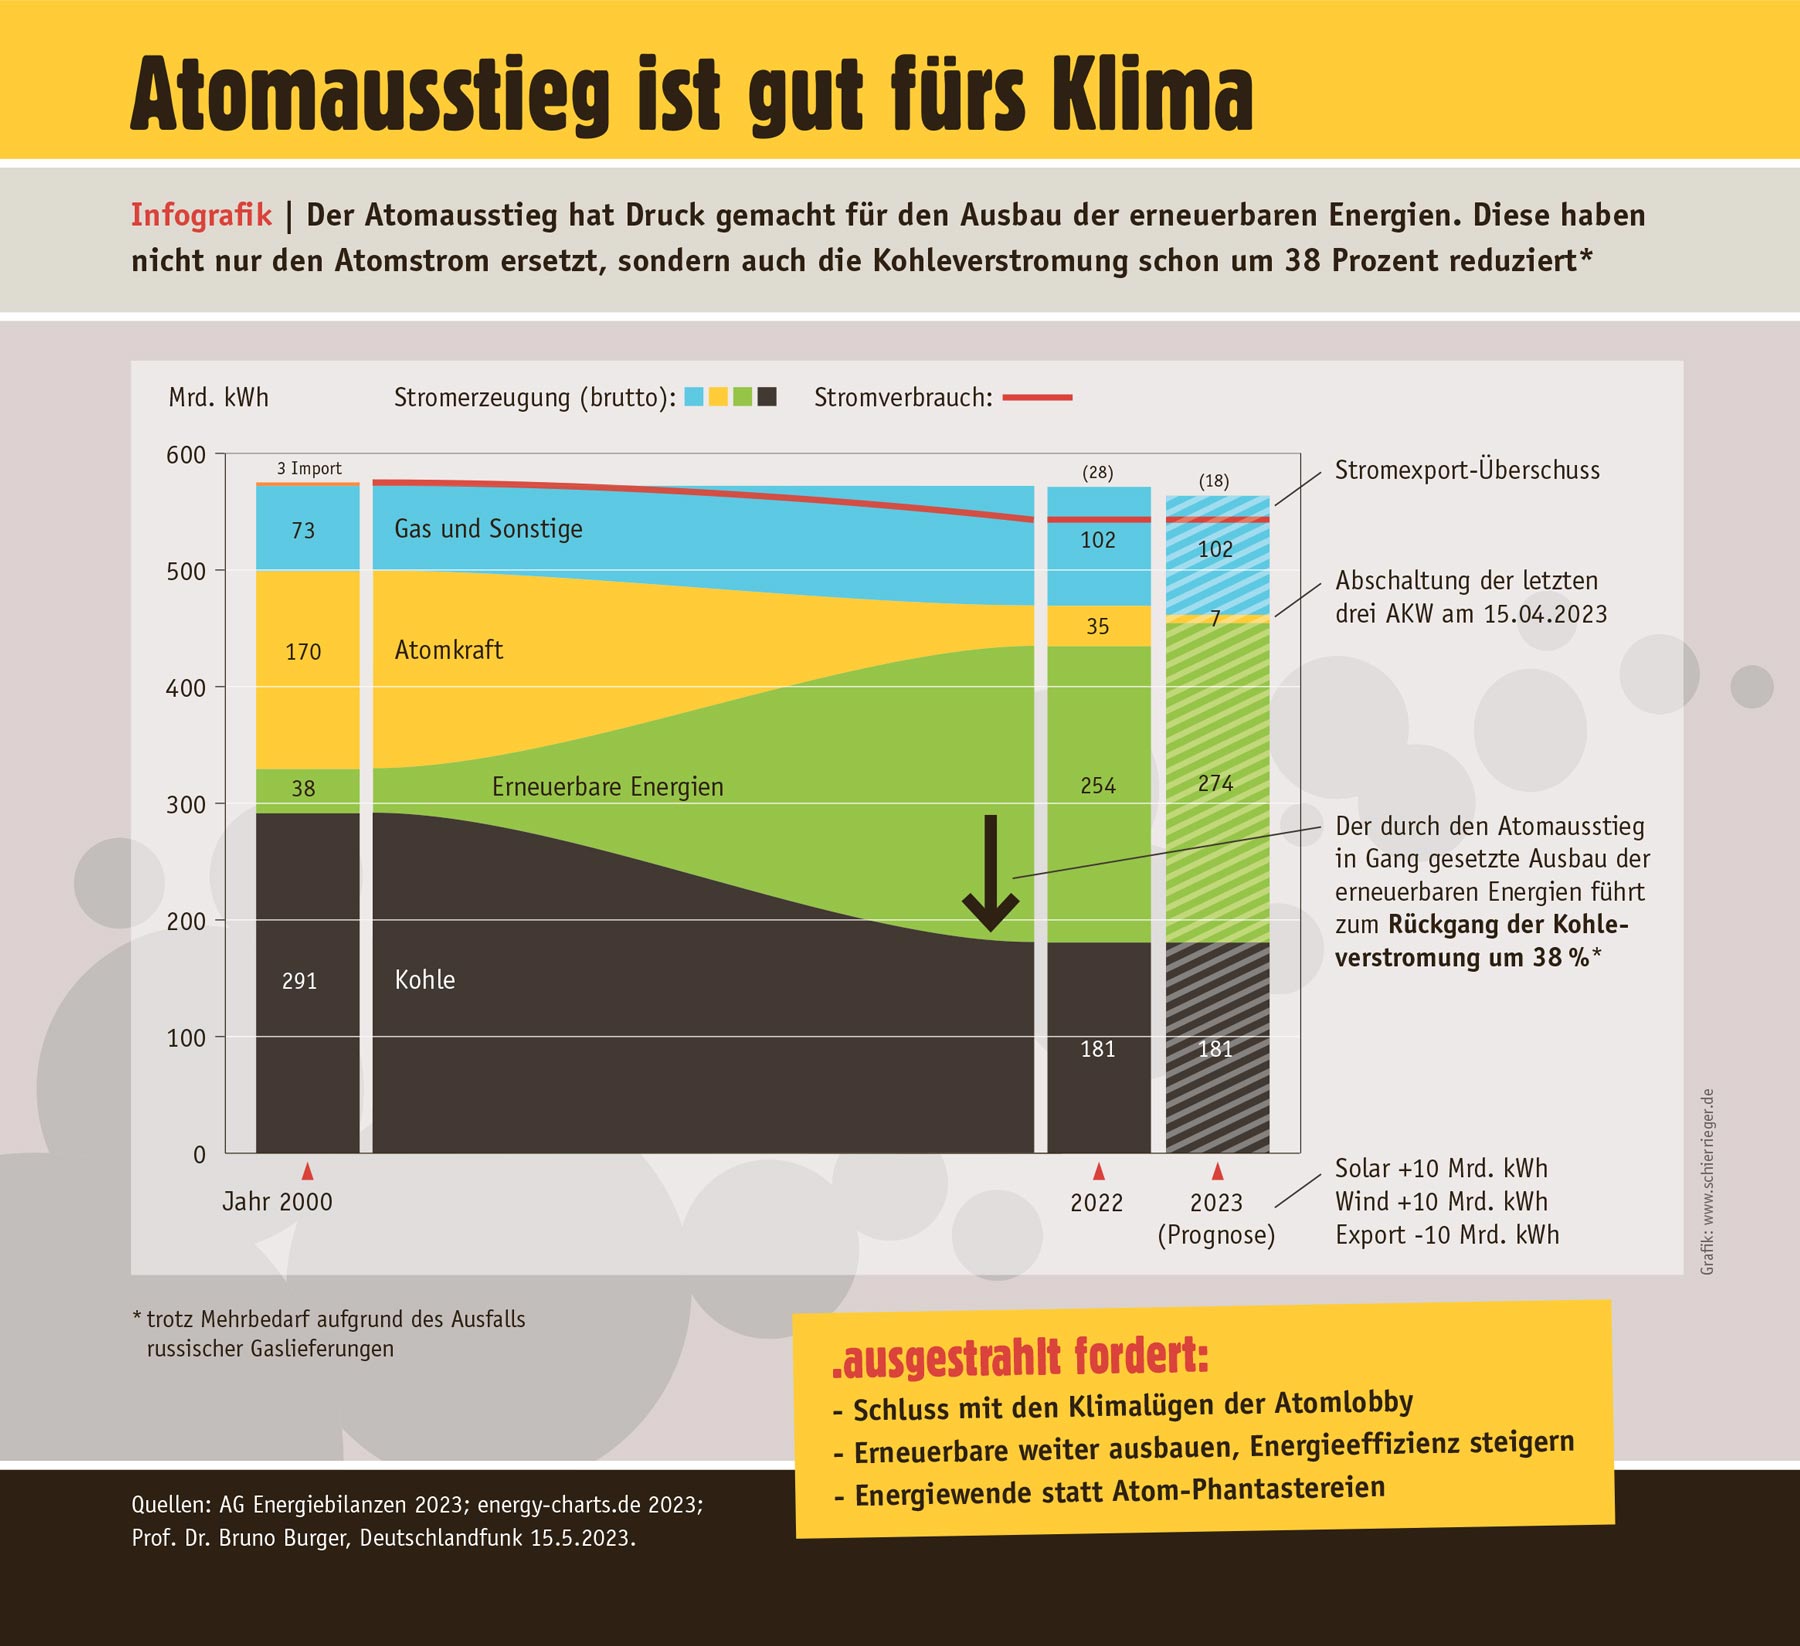 Infografik zur Auswirkung des Atomausstiegs auf das Klima